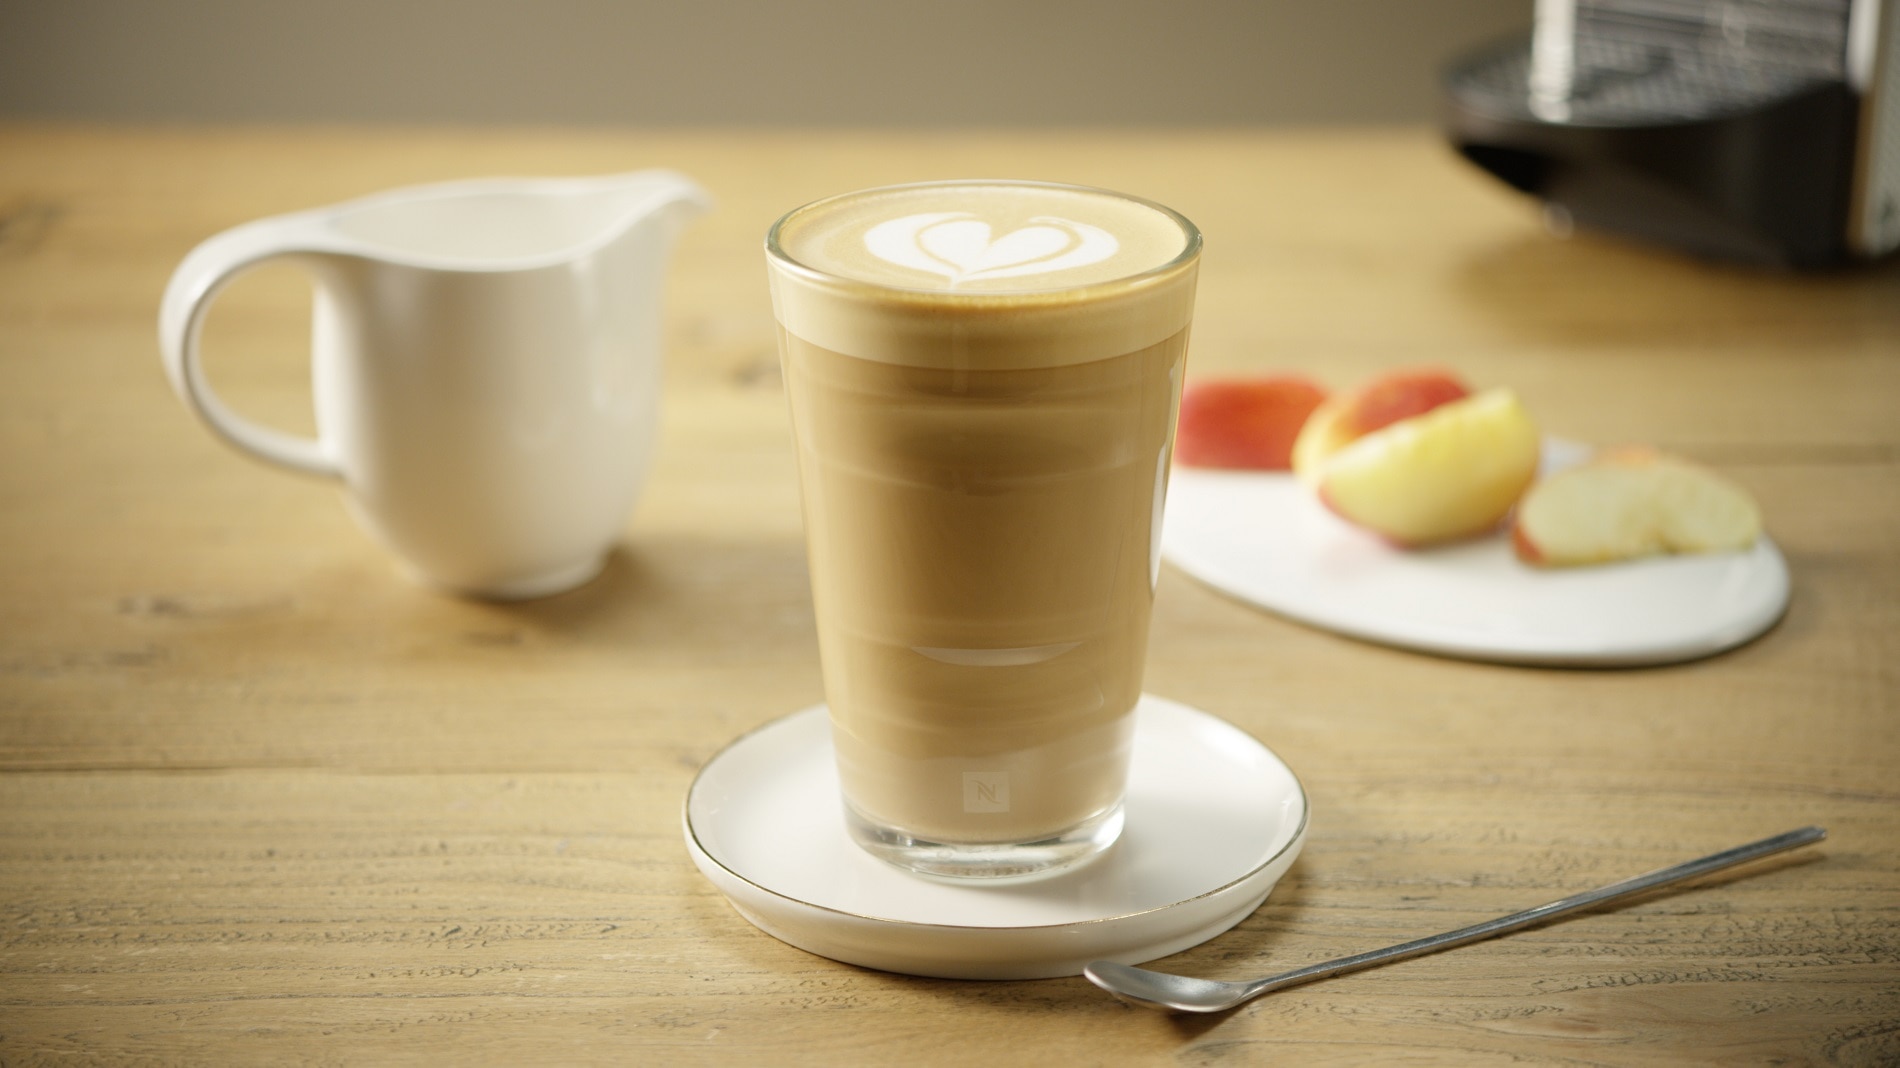 Caffè Latte by Nespresso - Nespresso Recipes